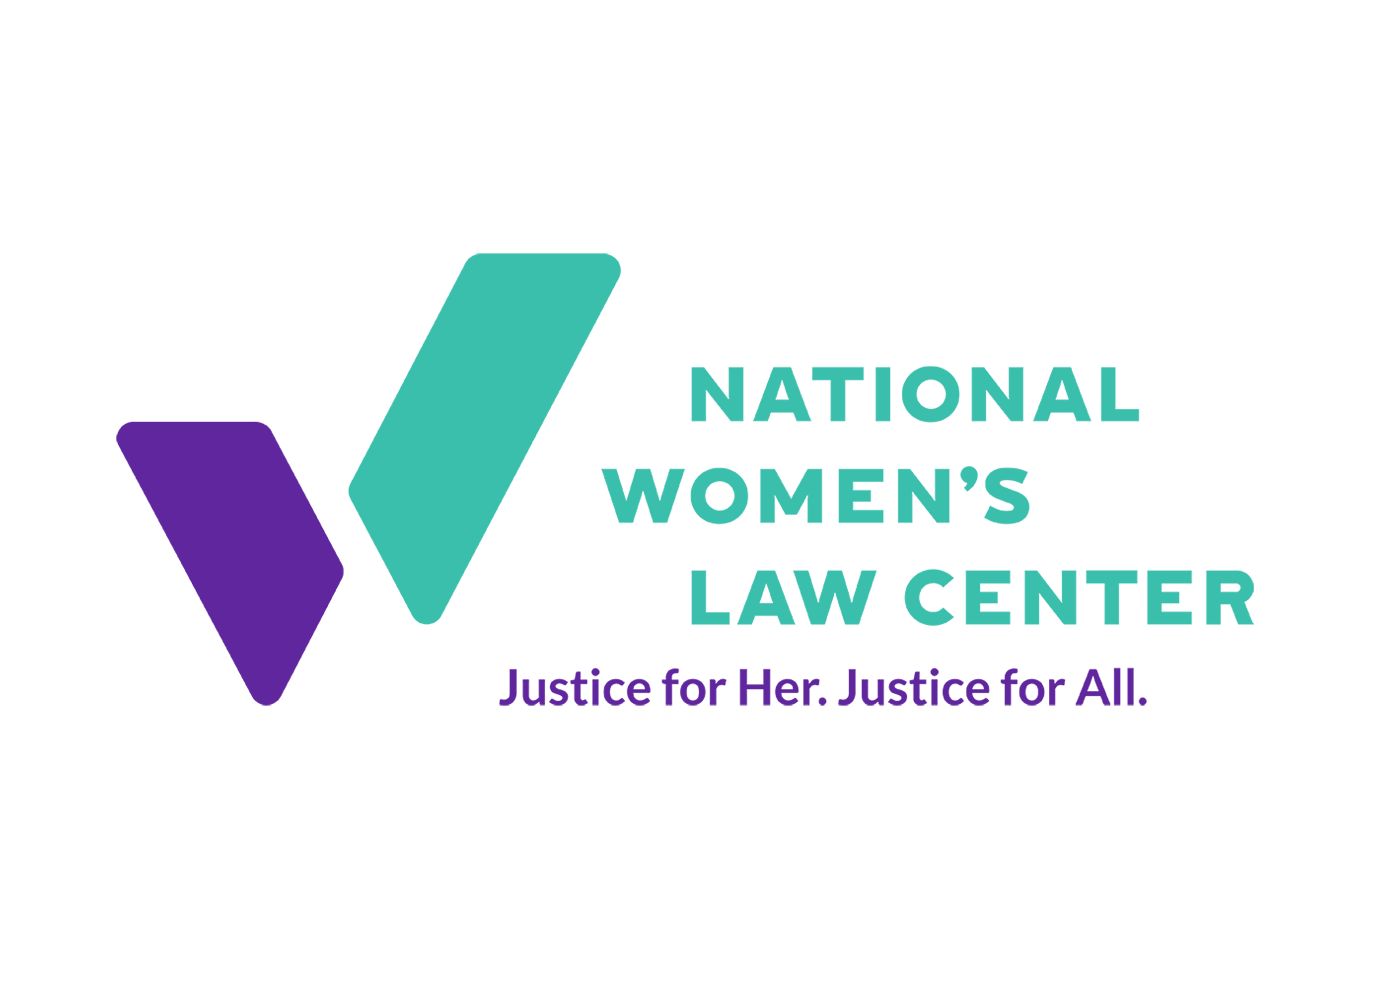 National Women’s Law Center logo